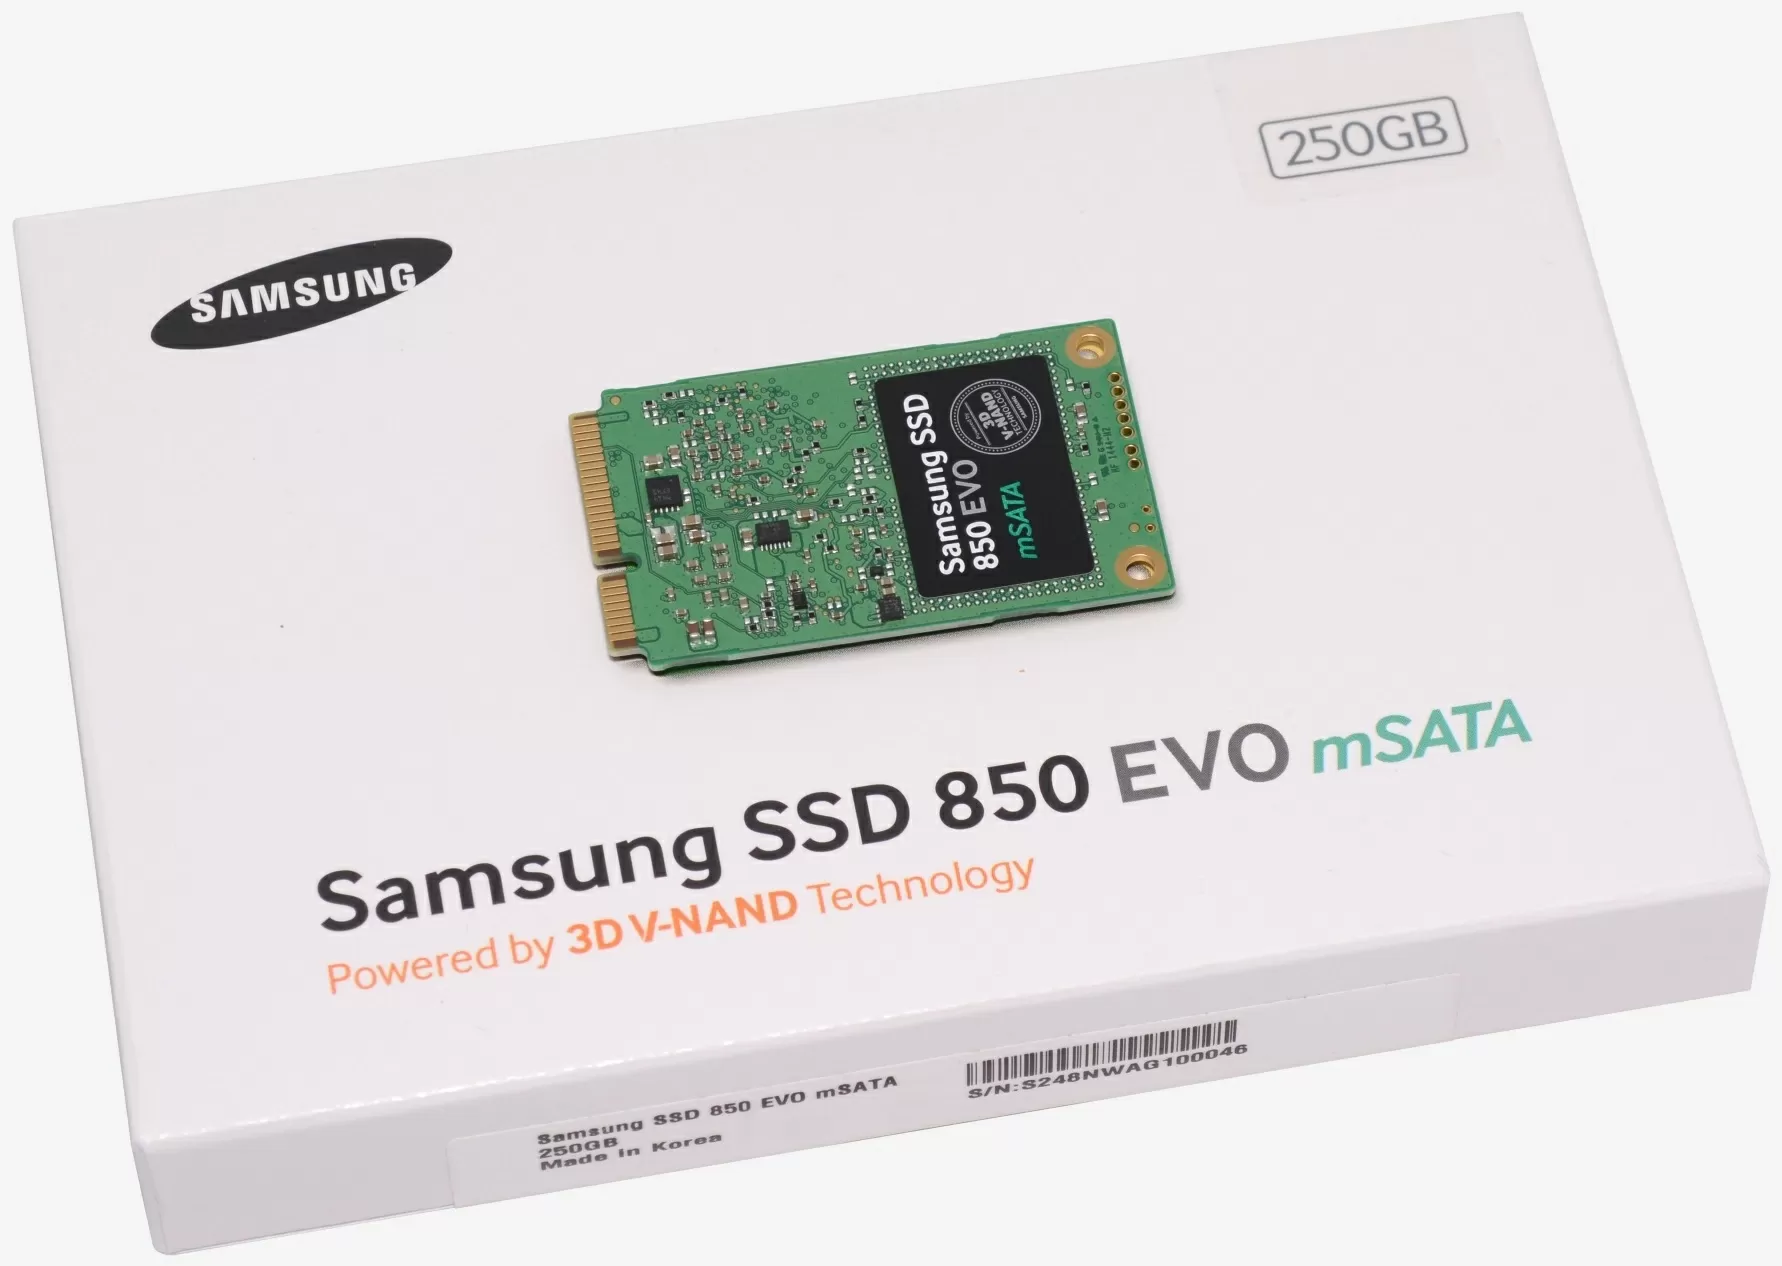 Geaccepteerd aanwijzing expeditie Samsung 850 Evo M.2 500GB & 850 Evo 250GB mSATA Review | TechSpot